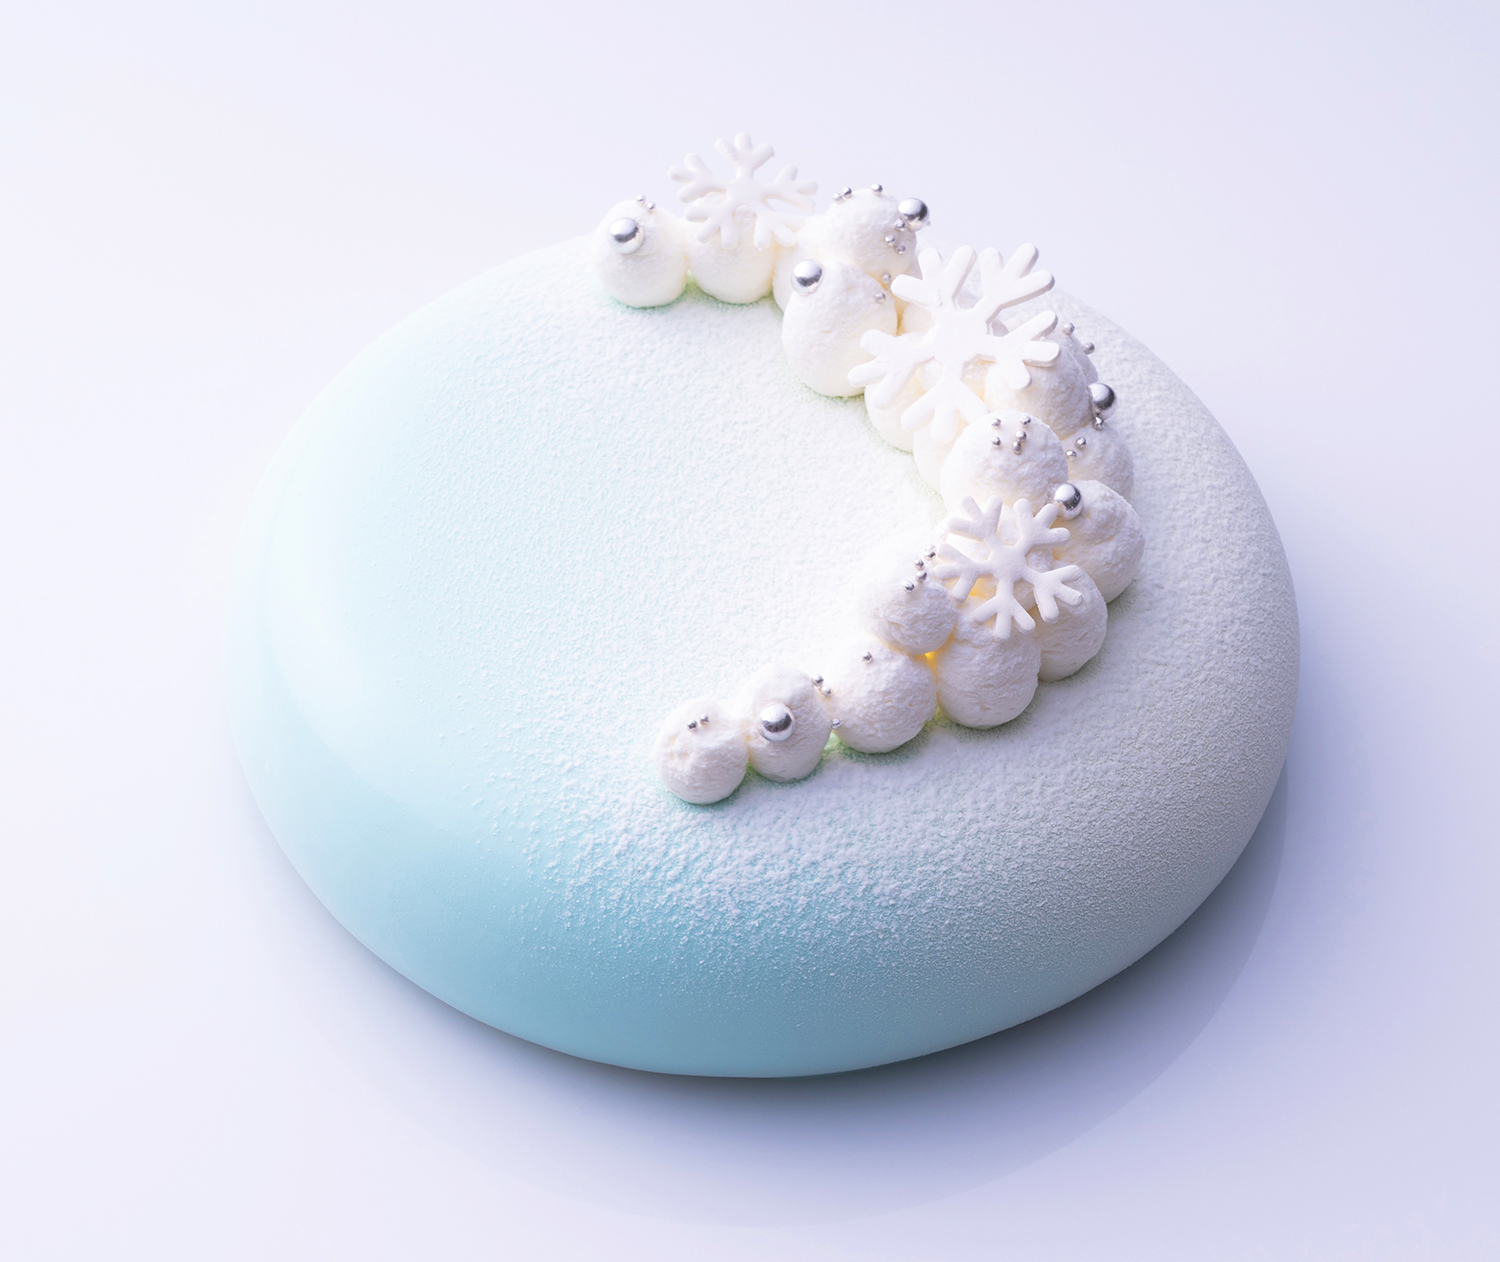 コンラッド大阪 夜空と青空をイメージした魅惑のクリスマスケーキ 1人用のオーナメント型のケーキも Emo Miu エモミュー